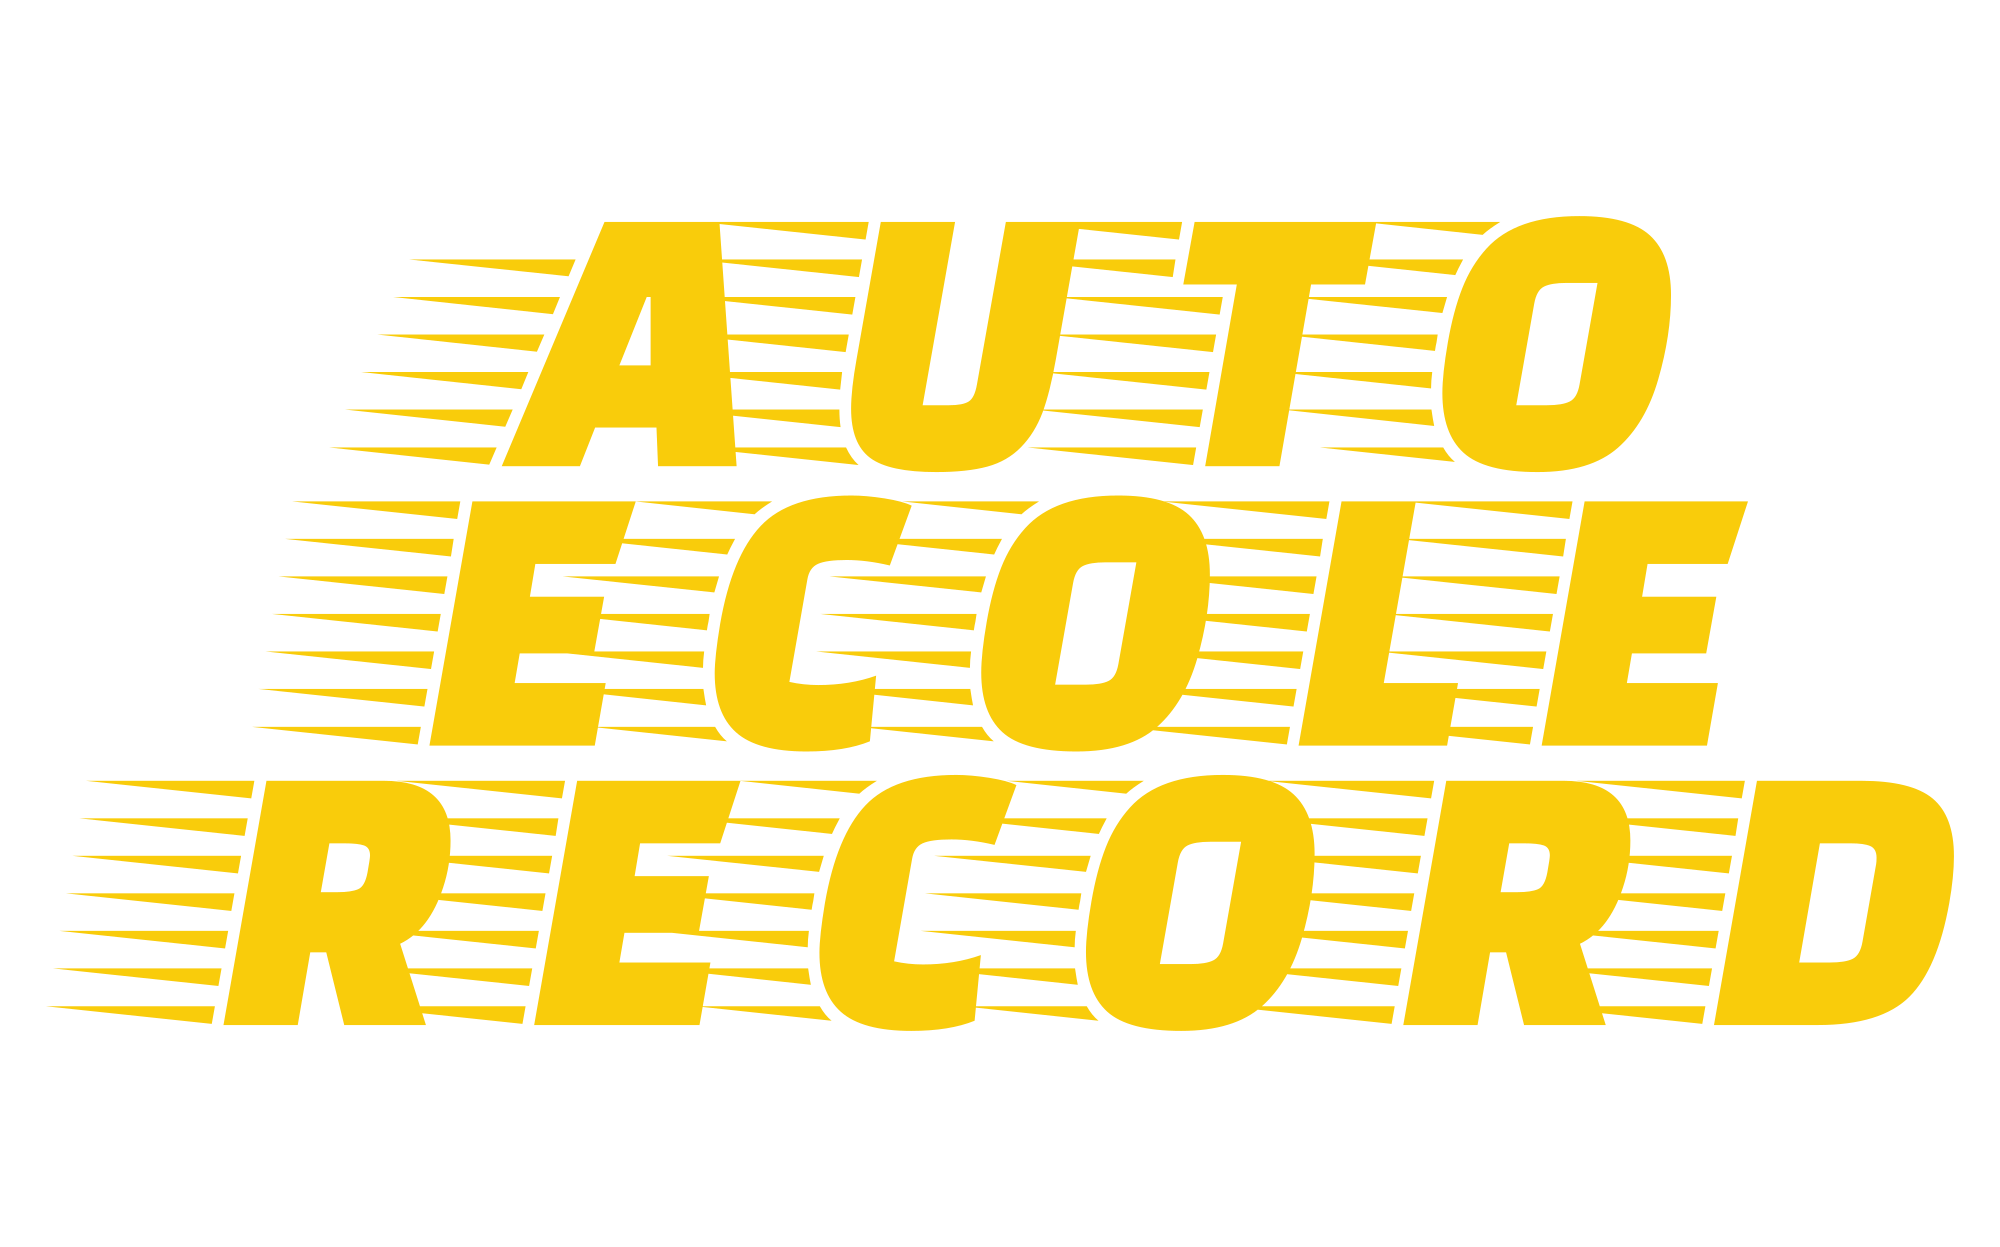 Auto-Ecole Record